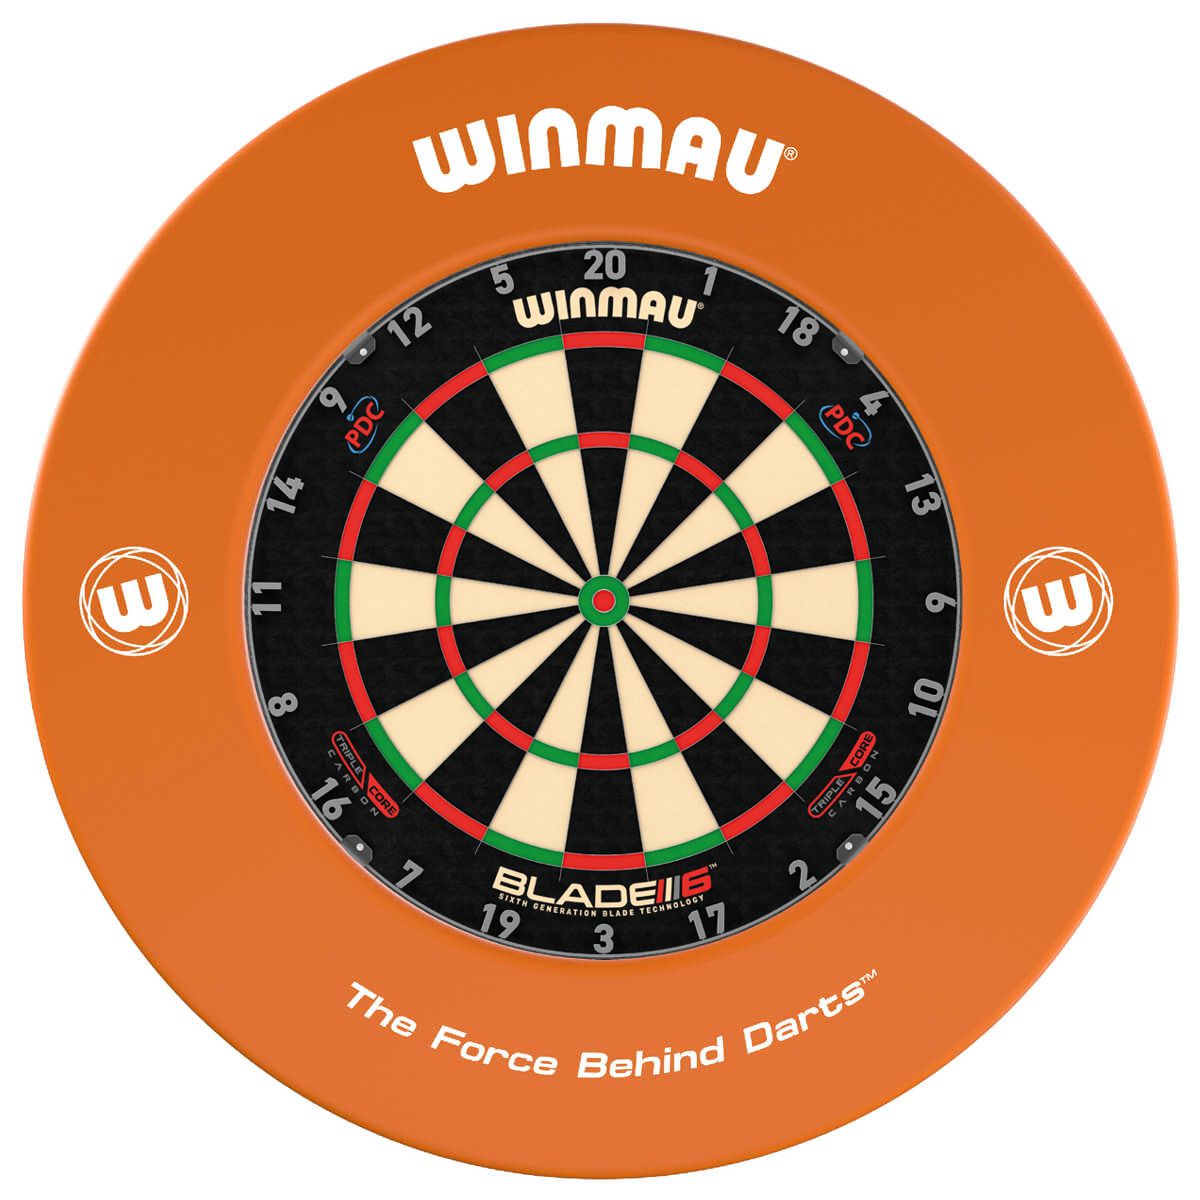 Winmau Surround Orange mit Logos